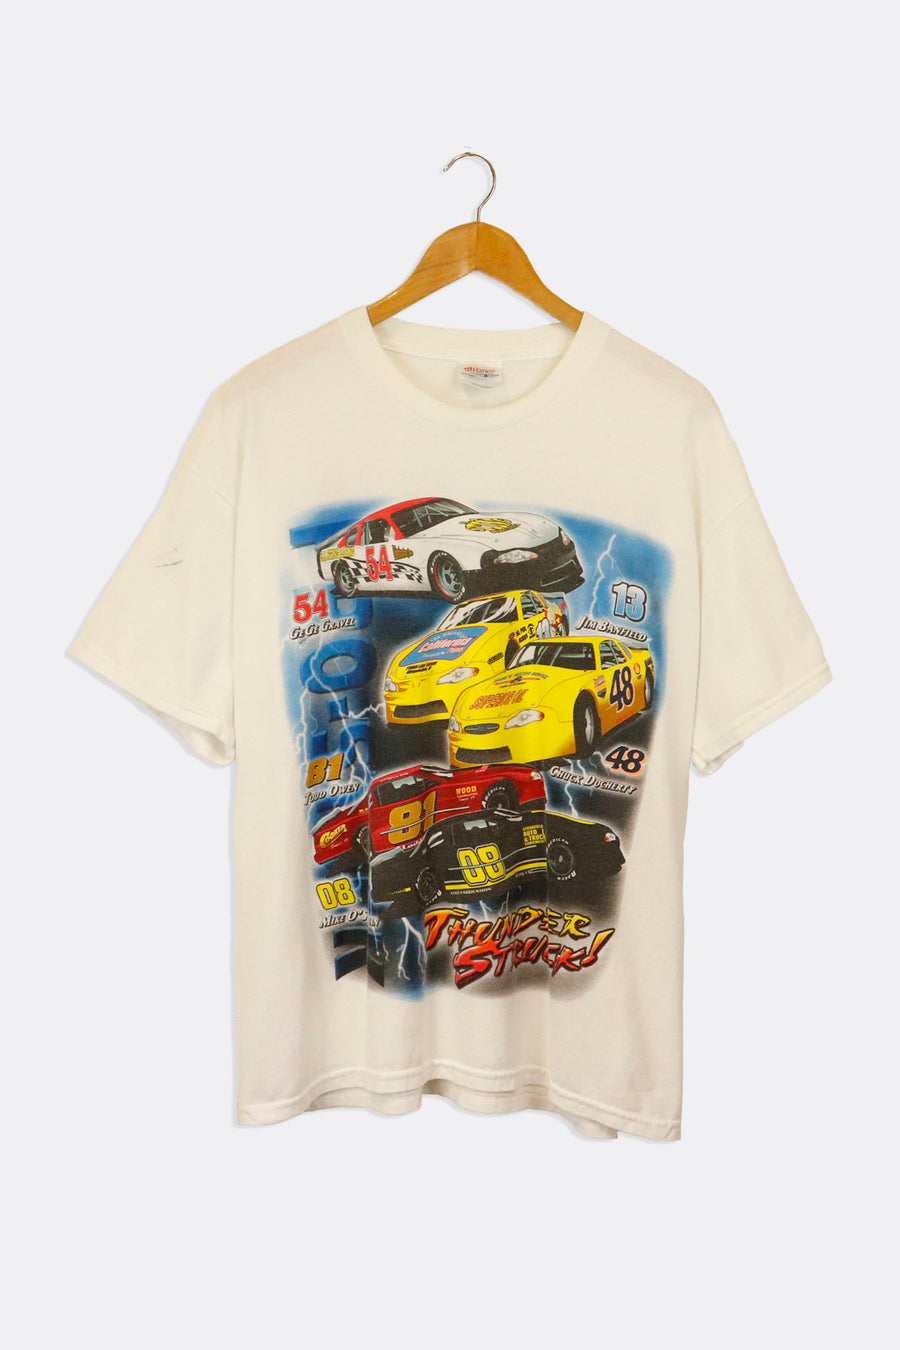 Vintage CC Racing Souvenirs Website T Shirt Sz L